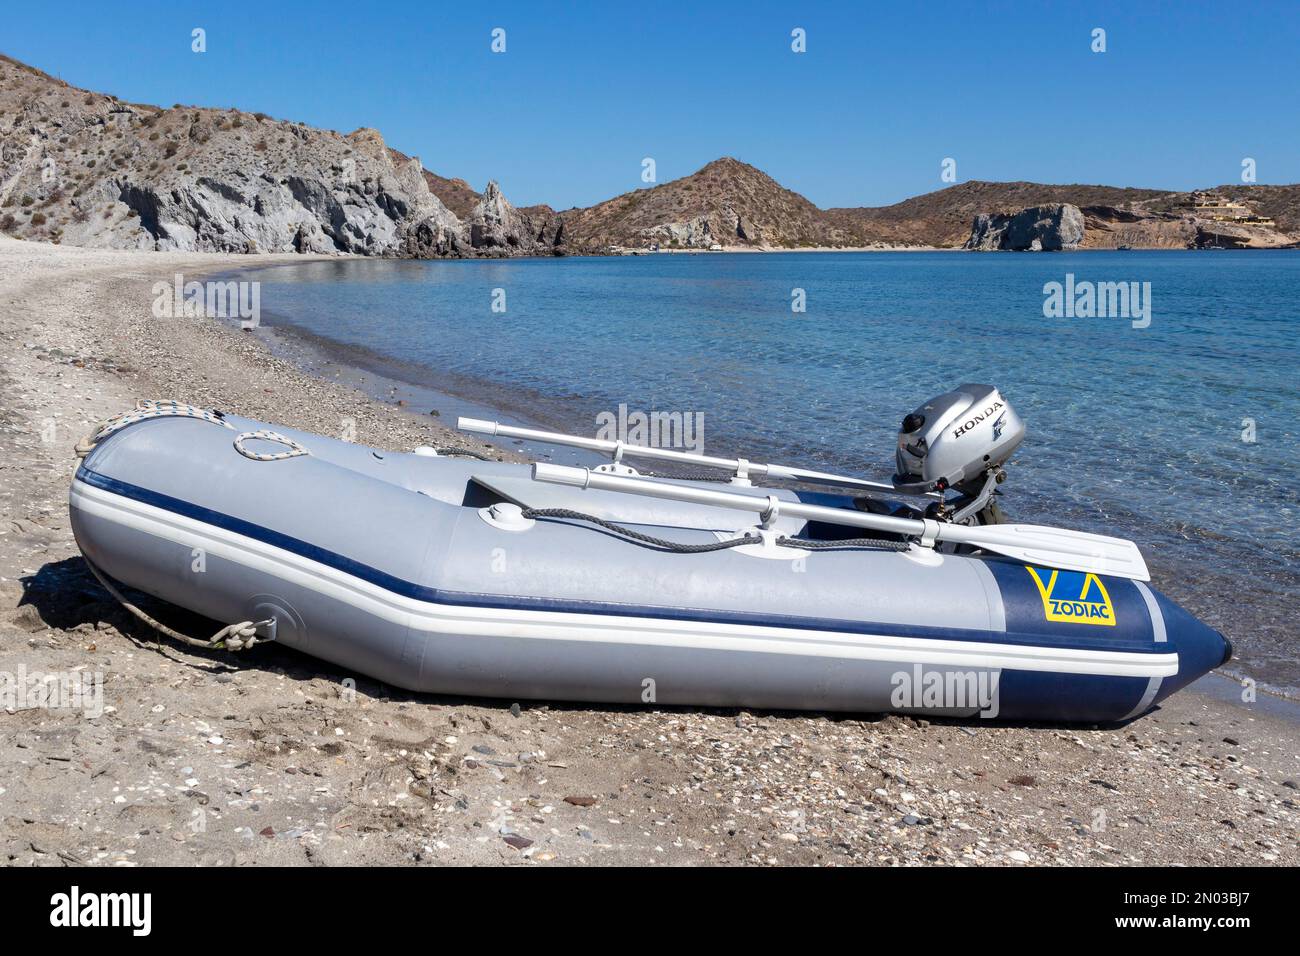 Gommone Zodiac (una barca tender) con motore fuoribordo Honda sulla spiaggia nel Mare di Cortez, Baja California, Messico. Foto Stock